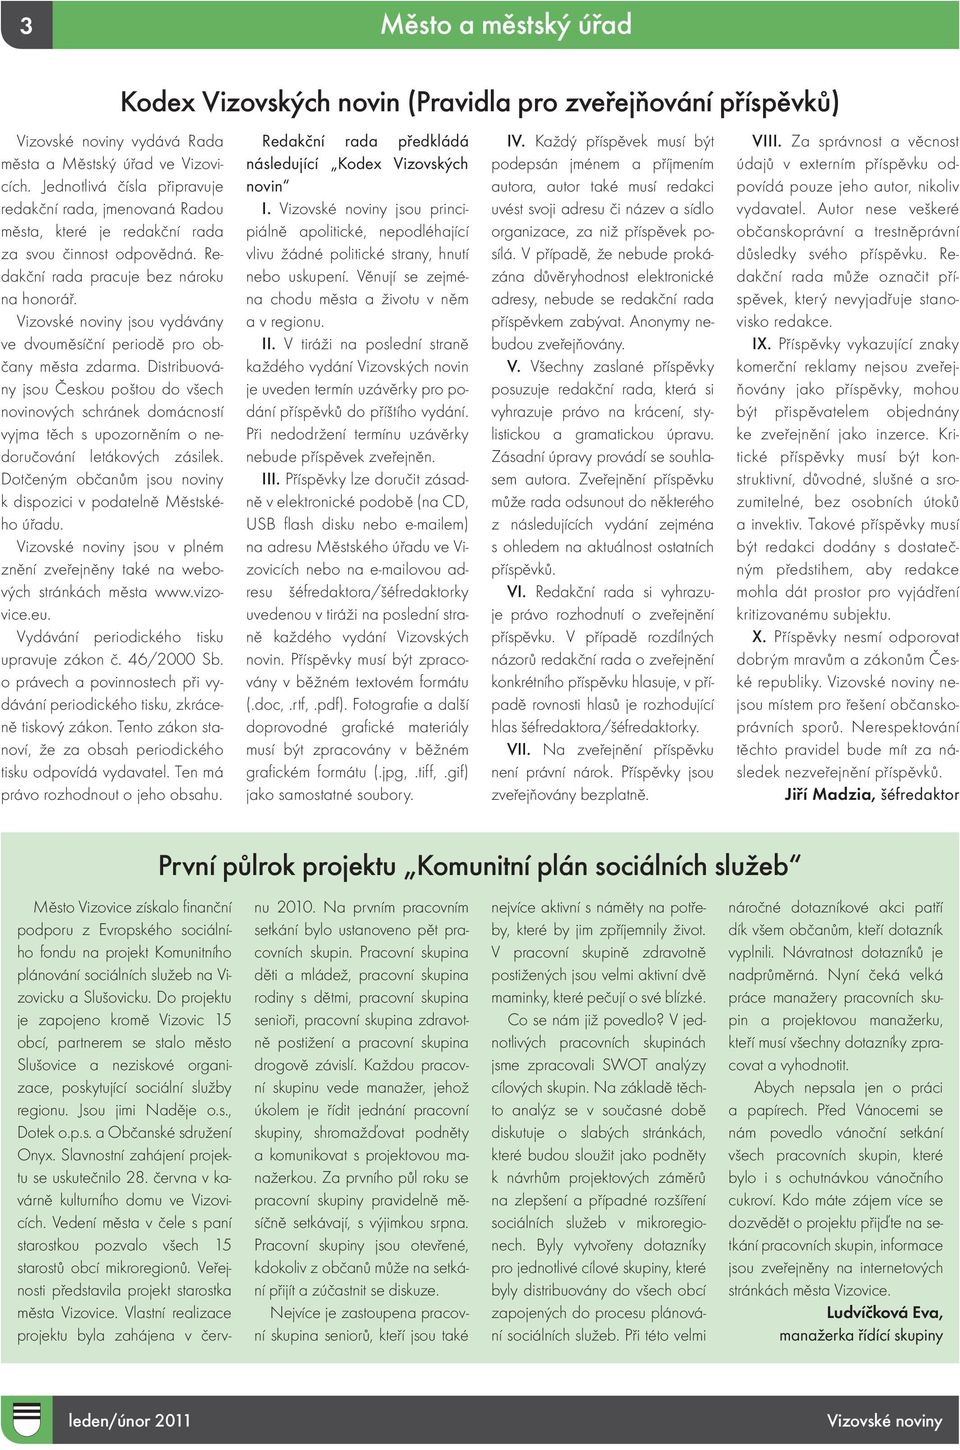 Vizovské noviny jsou vydávány ve dvouměsíční periodě pro občany města zdarma.